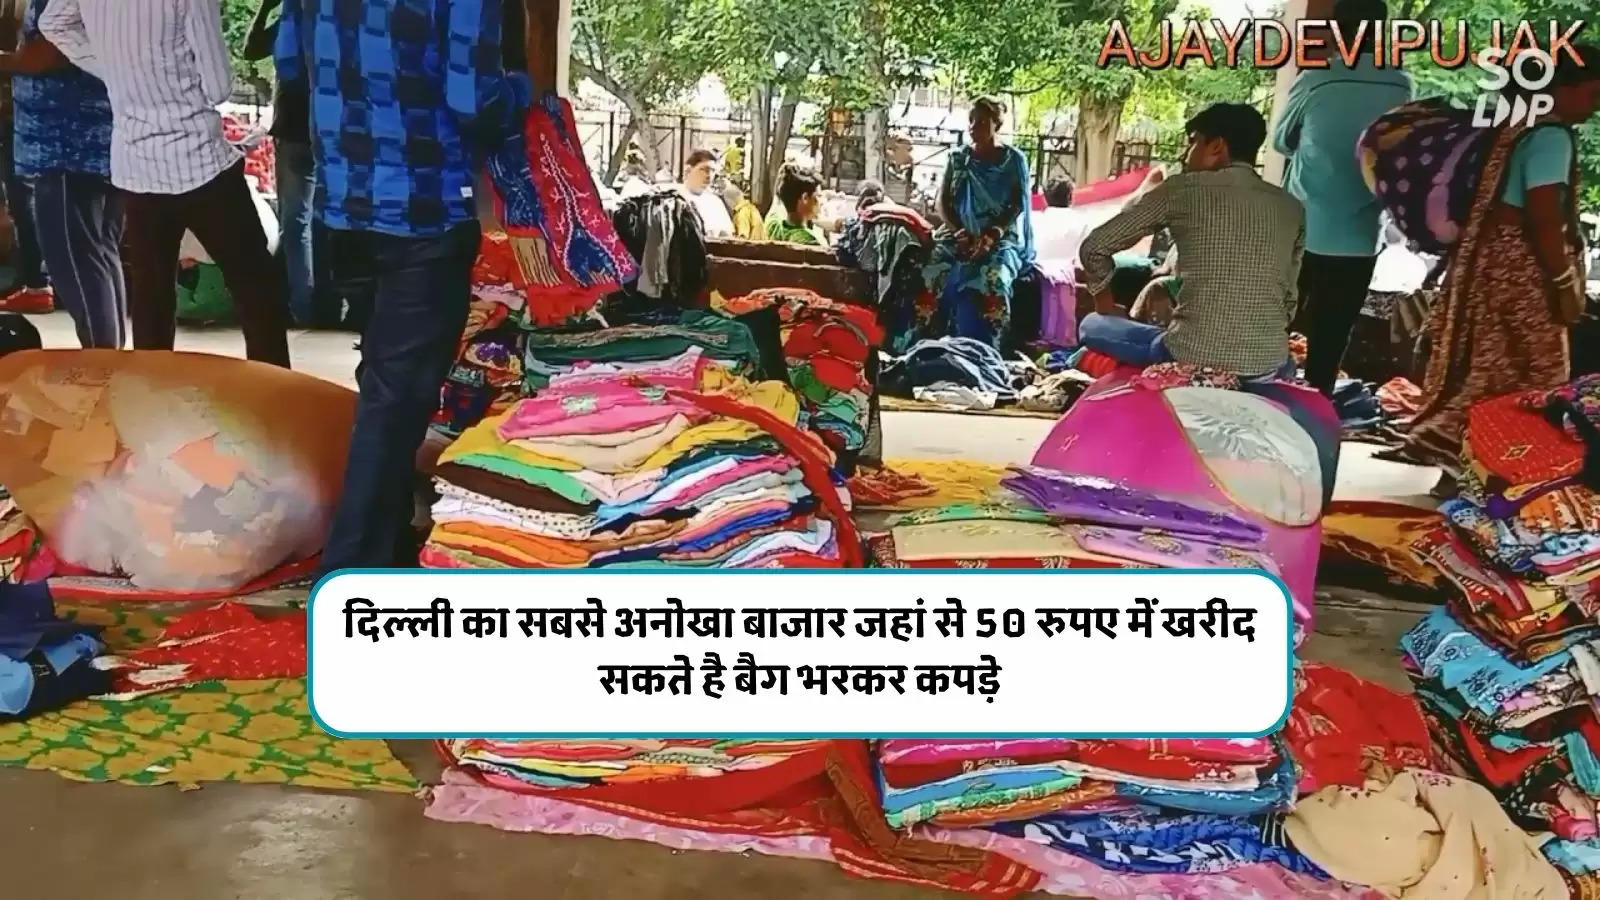 दिल्ली का सबसे अनोखा बाजार जहां से 50 रुपए में खरीद सकते है बैग भरकर कपड़े